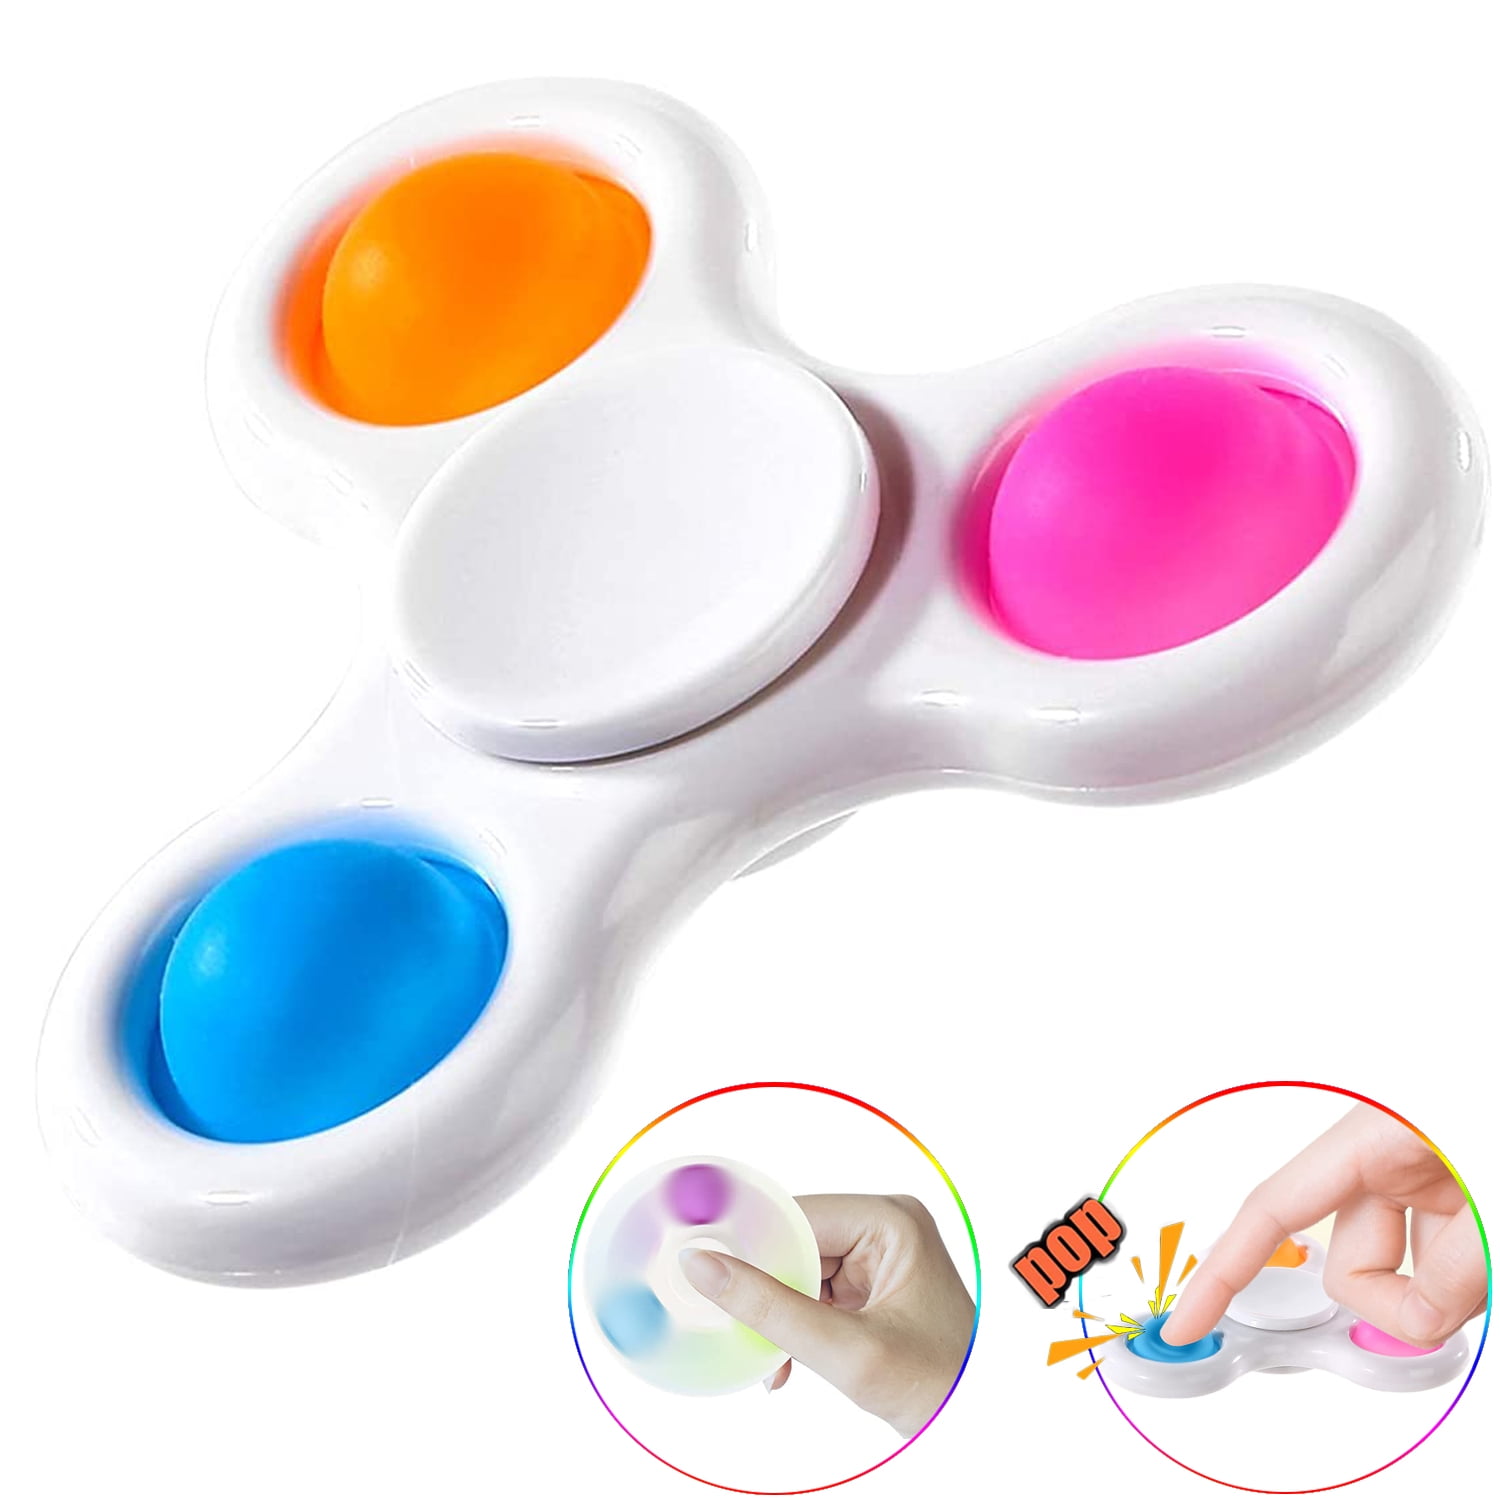 SCIONE Pop its Fidget Toys 5 Pcs,Pop its Fidget Spinners,Simple Dimple Fidget Toy Multicolored 2 